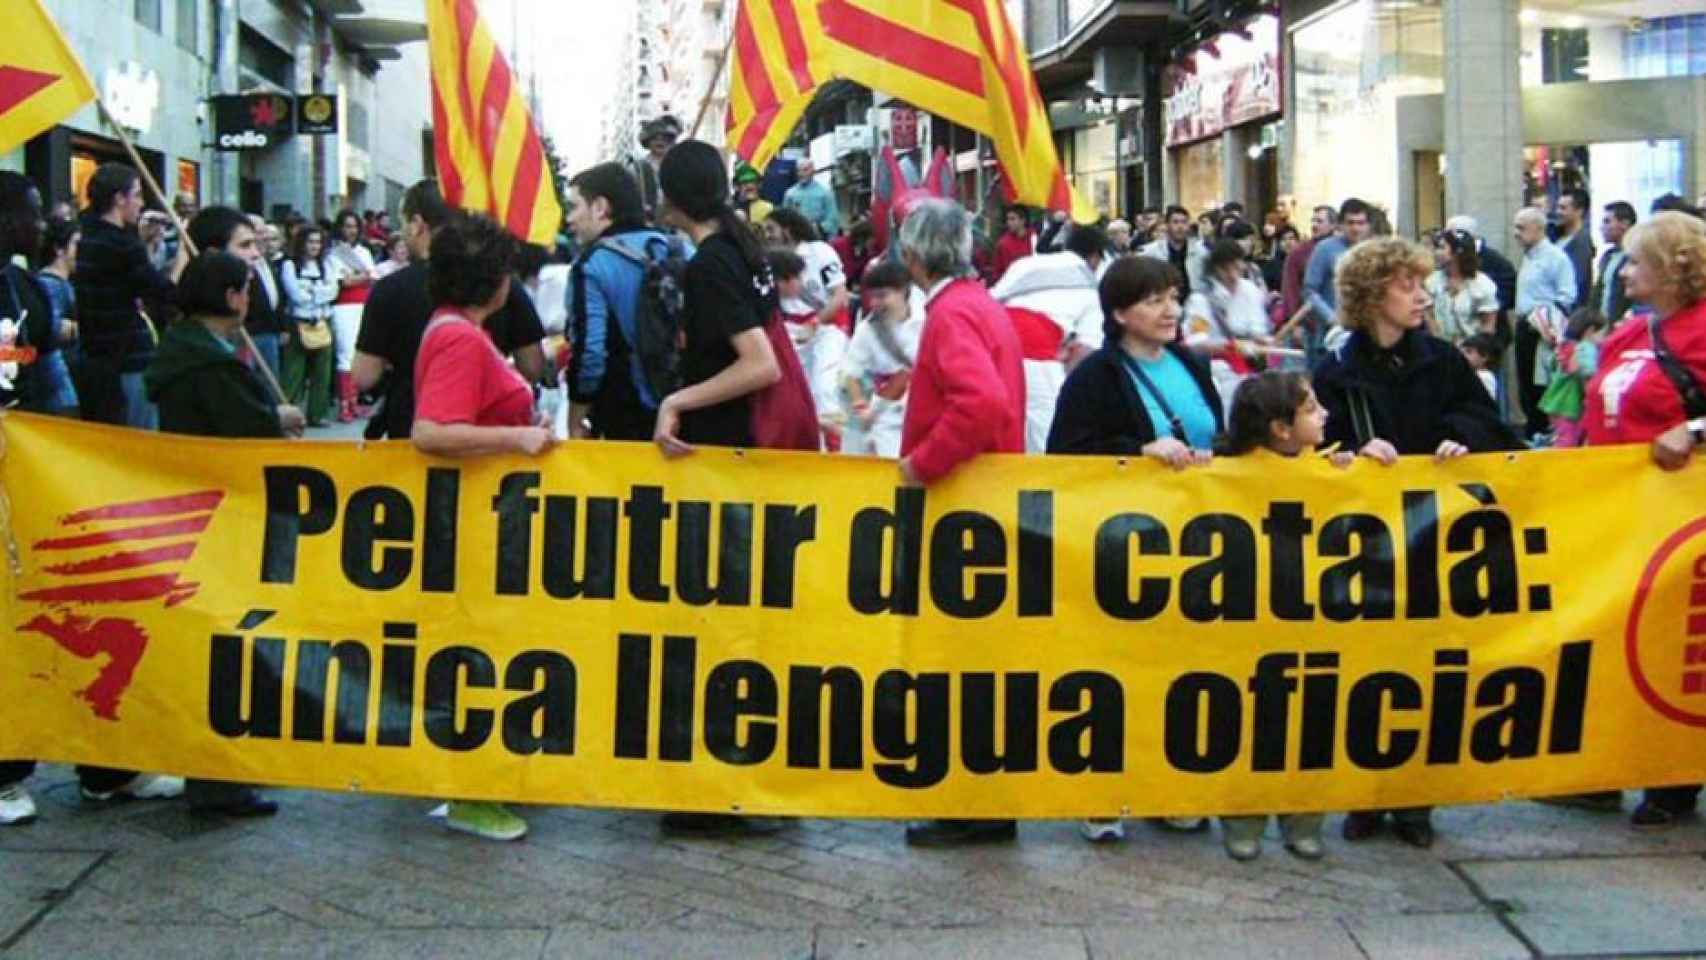 Manifestación a favor del catalán como única lengua oficial en Cataluña.